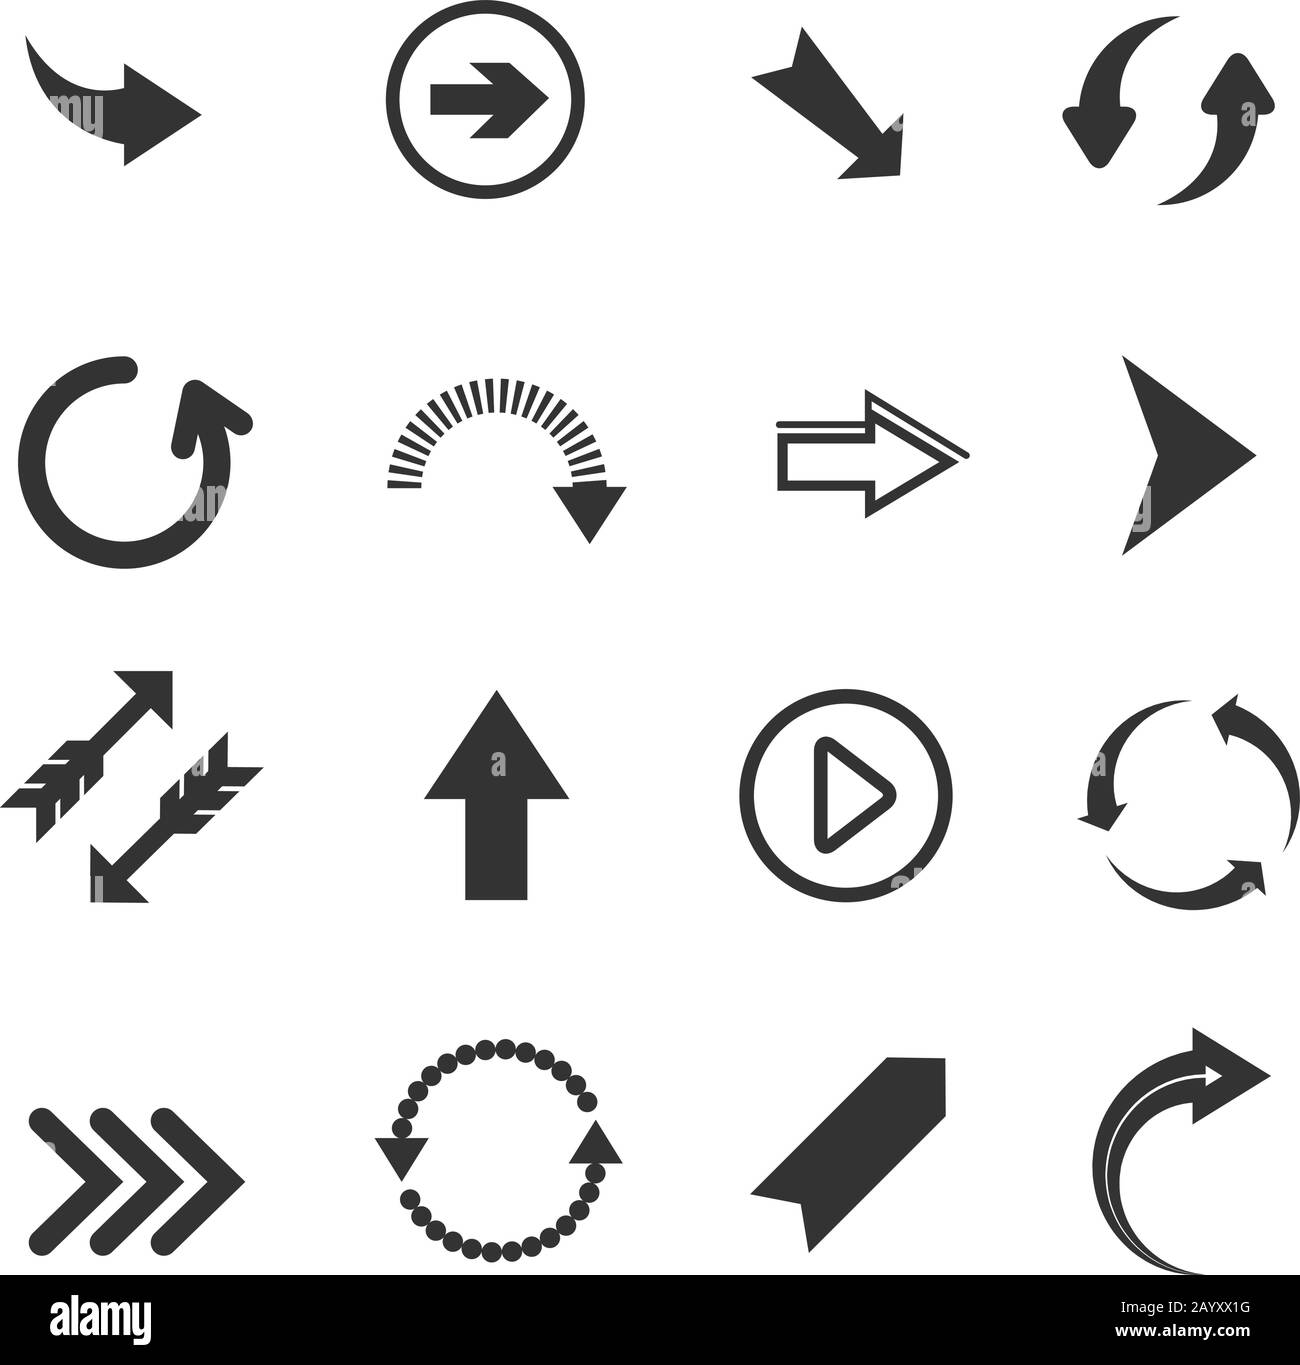 Icone freccia. Set vettoriale di frecce rotonde, segni di annullamento e ripetizione, frecce di riciclo su sfondo bianco Illustrazione Vettoriale